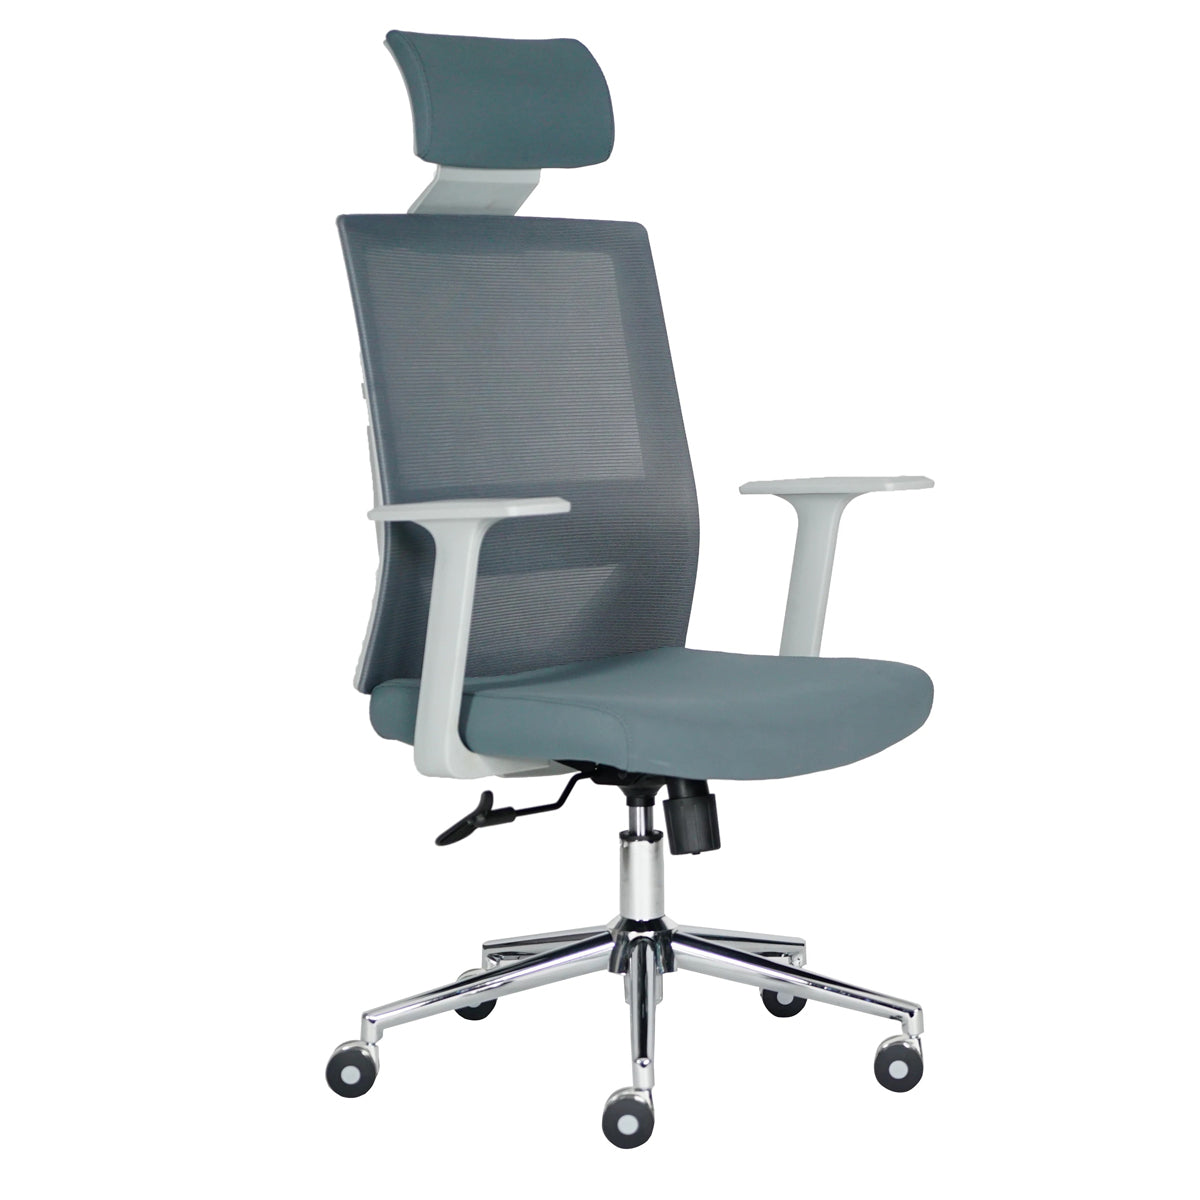 Sillón Ejecutivo Vision respaldo alto y asiento gris tapizado en mesh con base nylon